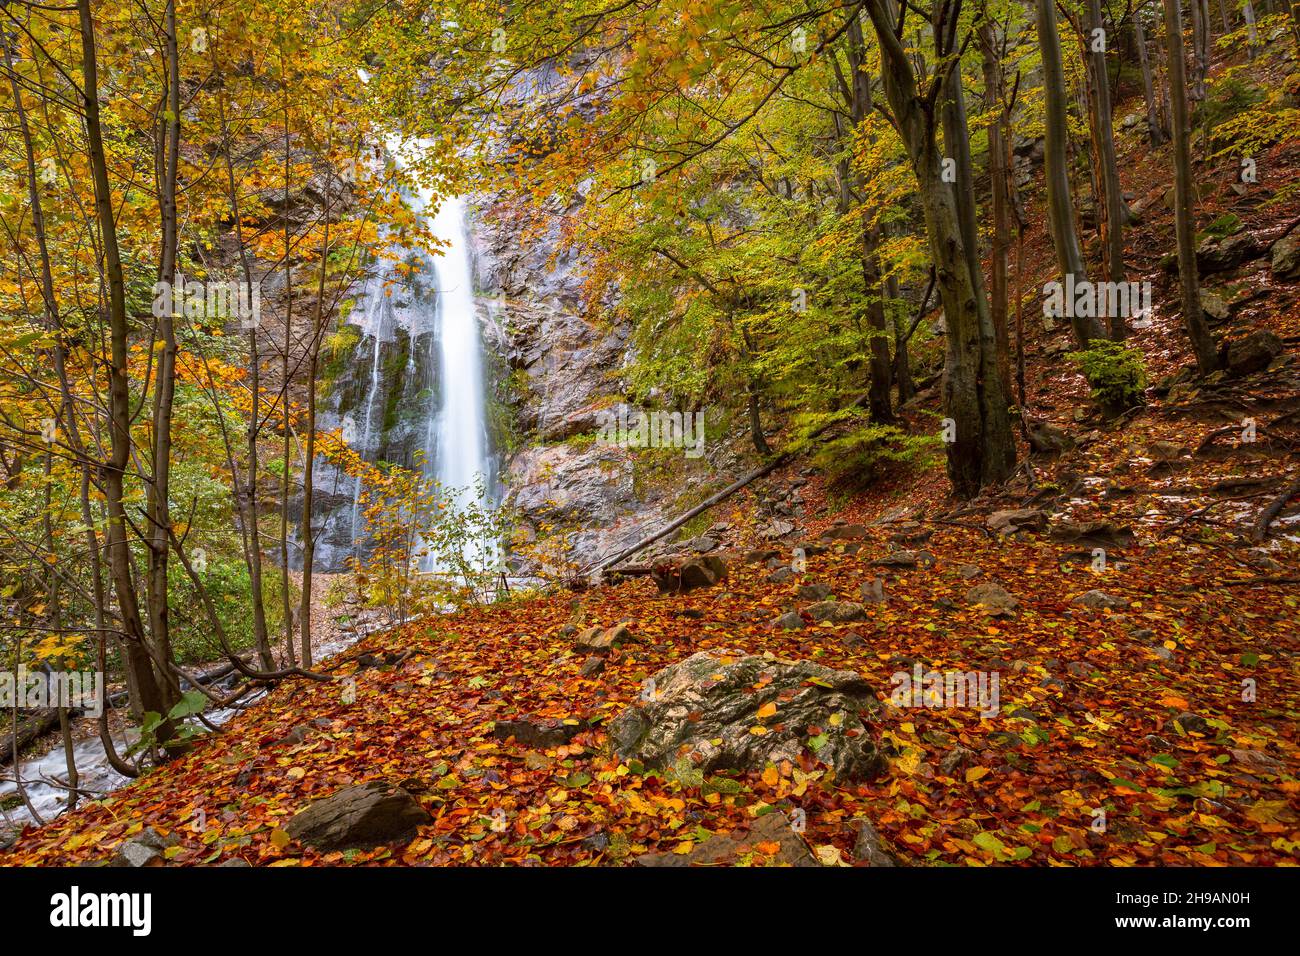 Waterfall in Mala Fatra national park, Slovakia. Stock Photo